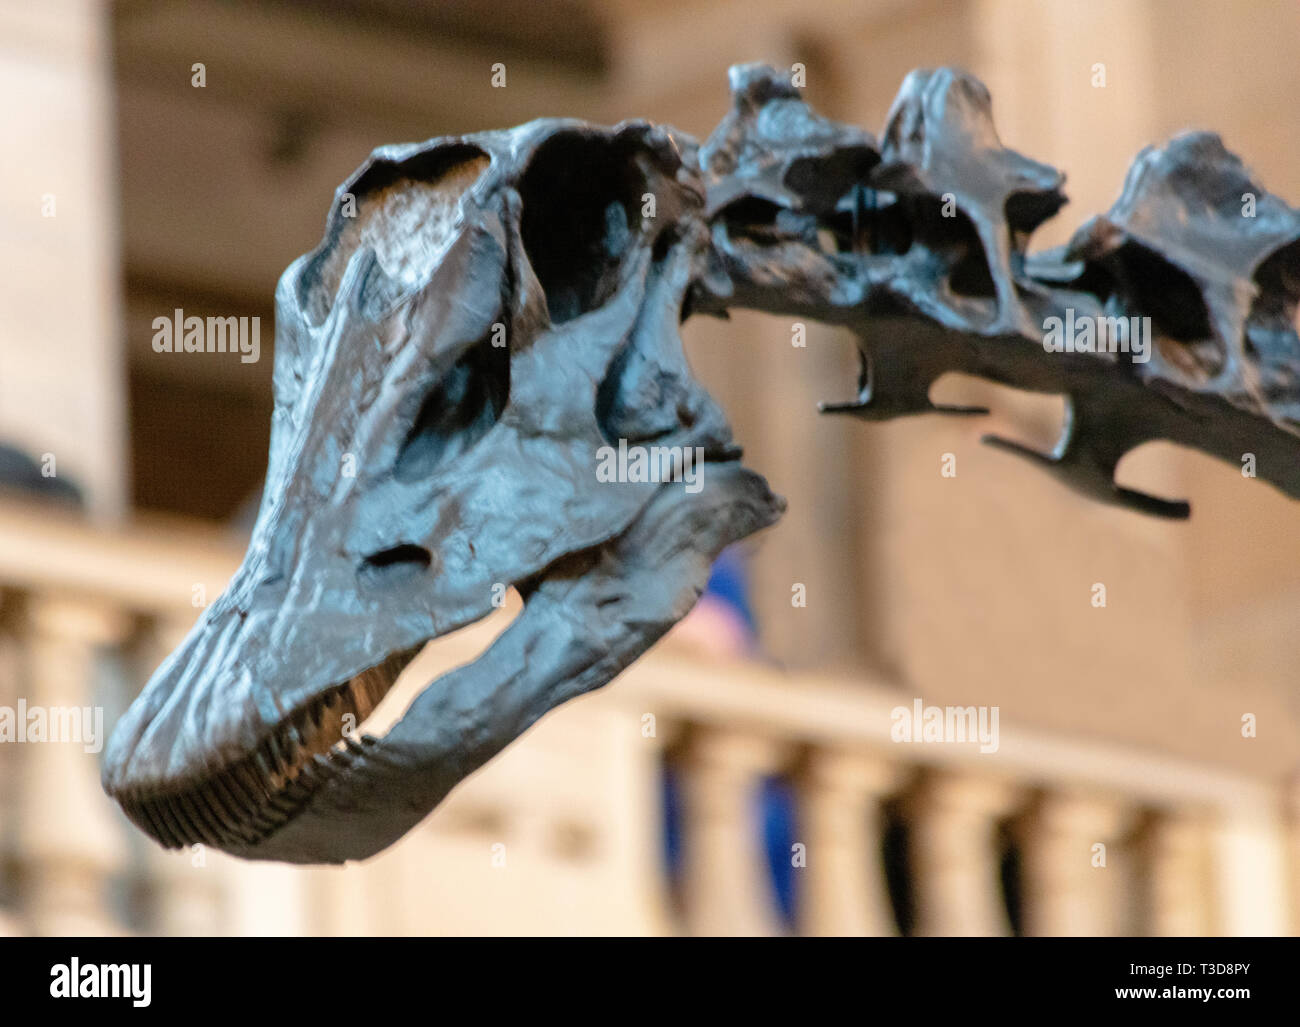 Le célèbre dinosaure Diplodocus fofolle en tournée dans Kelingrove Museum and Art Gallery, Glasgow, Ecosse Banque D'Images